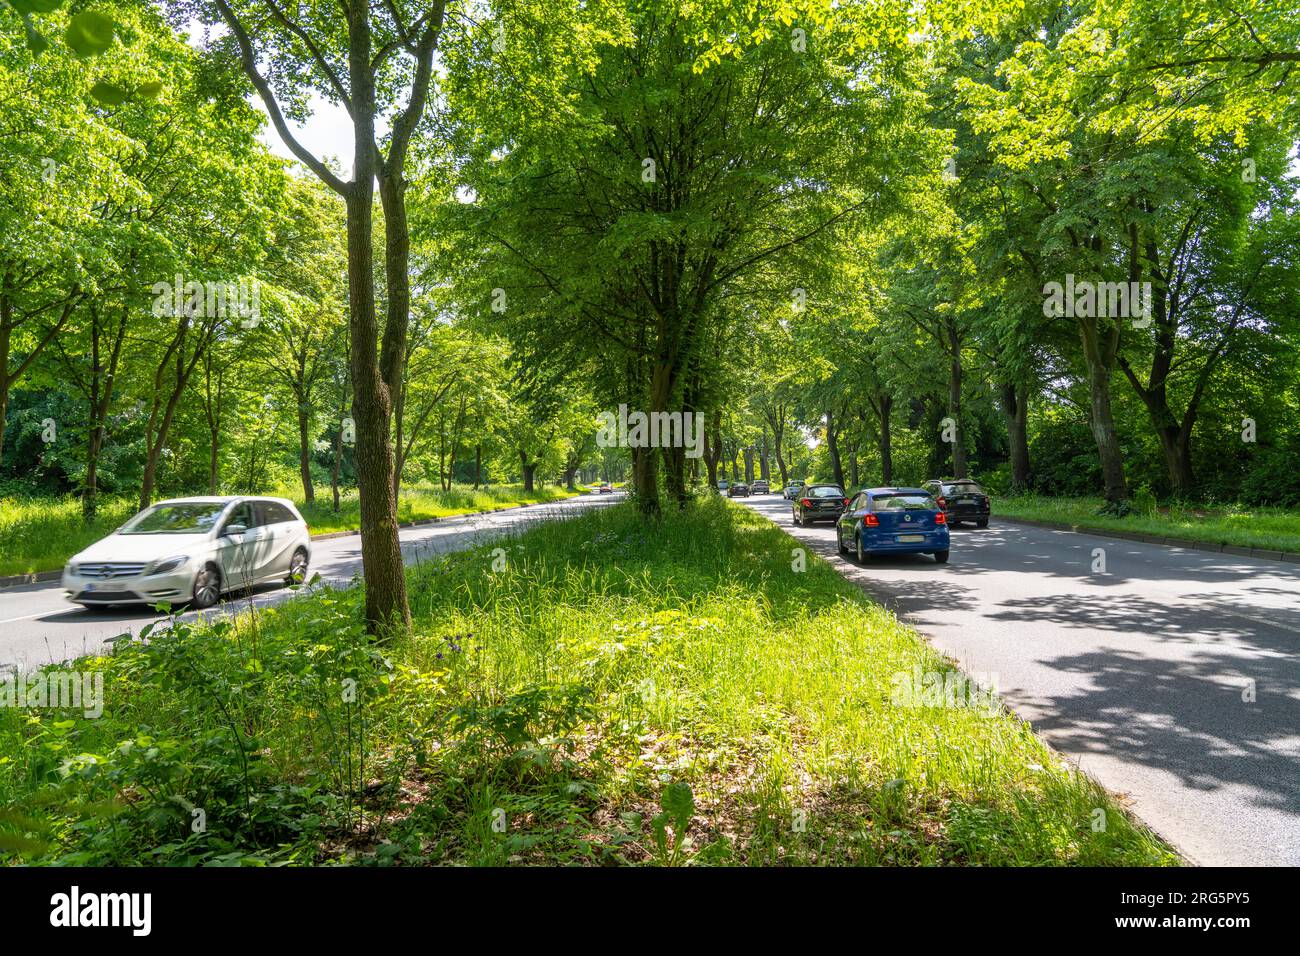 Quatre voies, avenue du centre-ville bordée de nombreux arbres anciens, le Königsallee à Bochum, menant au sud du centre-ville vers Bochum-Stiepel était desig Banque D'Images